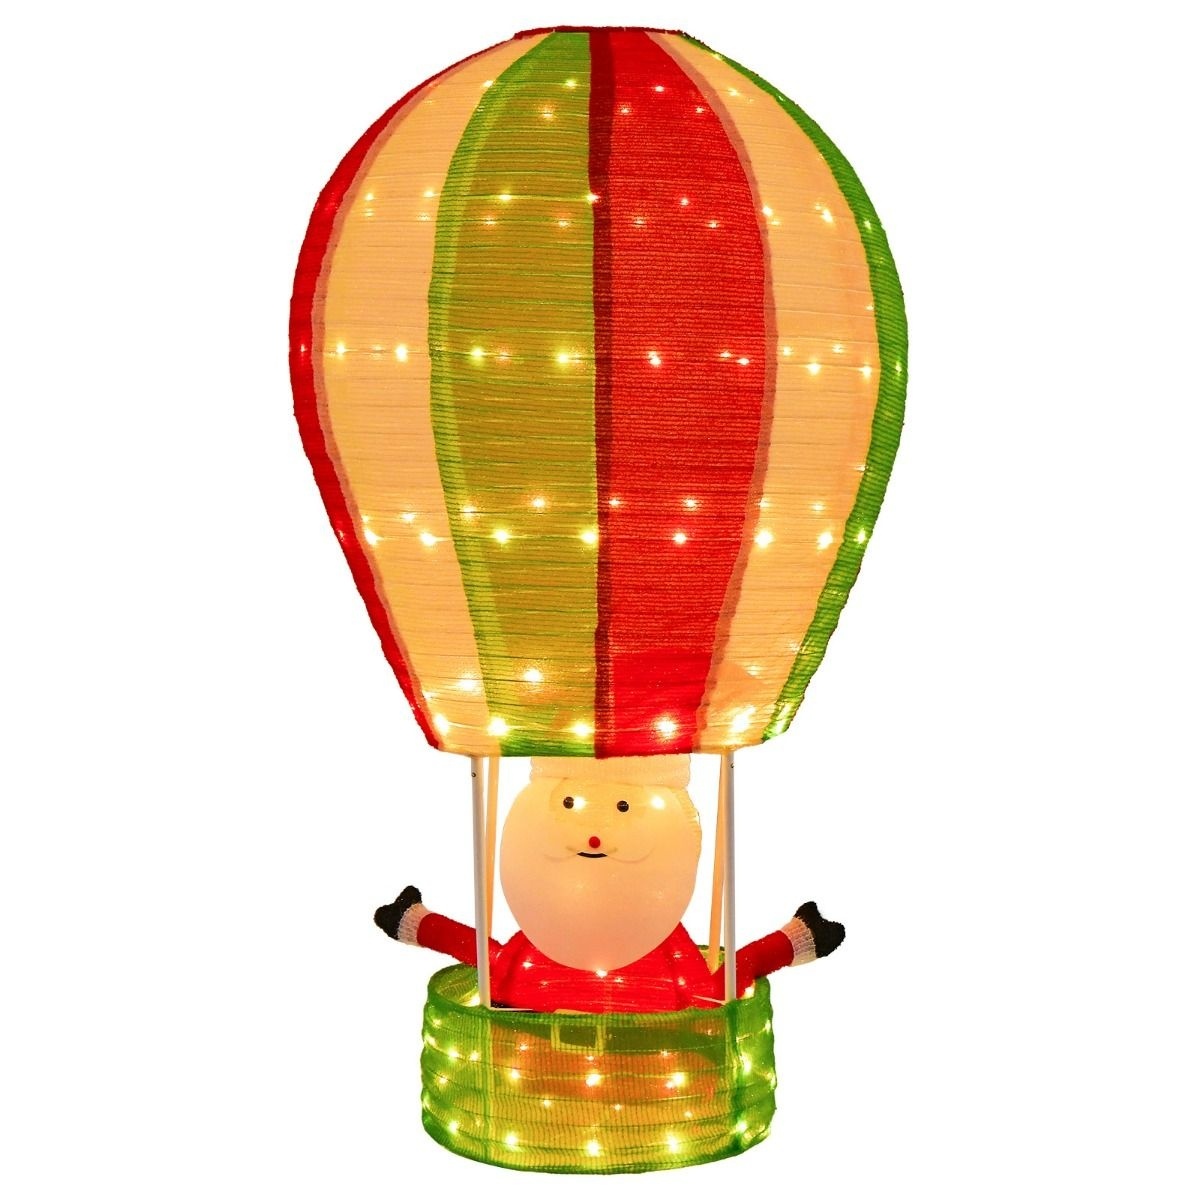 Wunder mit günstig Kaufen-Coast Santa Heißluftballon Weihnachtsdekoration - 135cm. Coast Santa Heißluftballon Weihnachtsdekoration - 135cm <![CDATA[Frohe Weihnachten! Erhellen Sie einfach die Nacht und genießen Sie eine wunderbare Weihnachtsfeier mit unserem Weihnachtsm